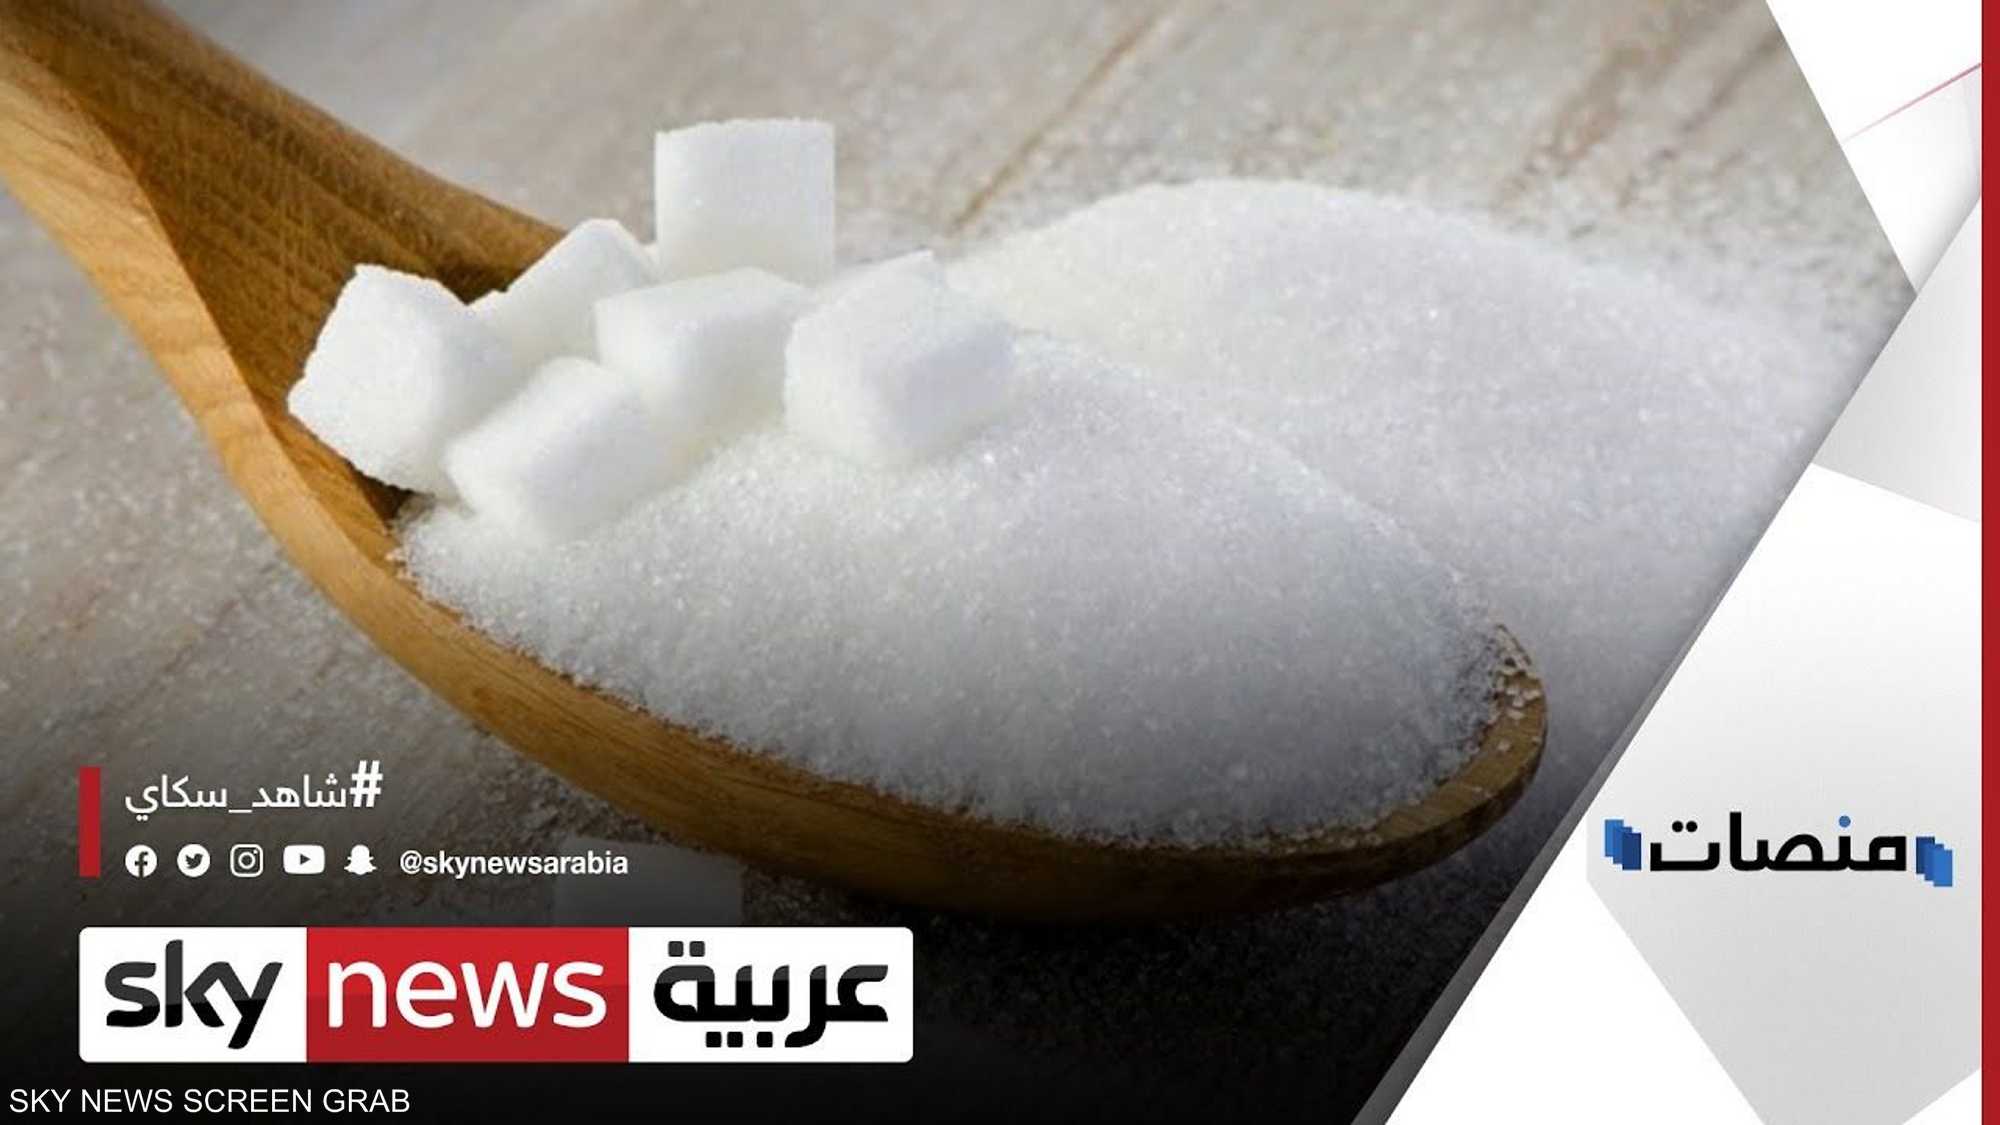 الجزائر تقترح رفع الدعم عن السكر لدواع صحية